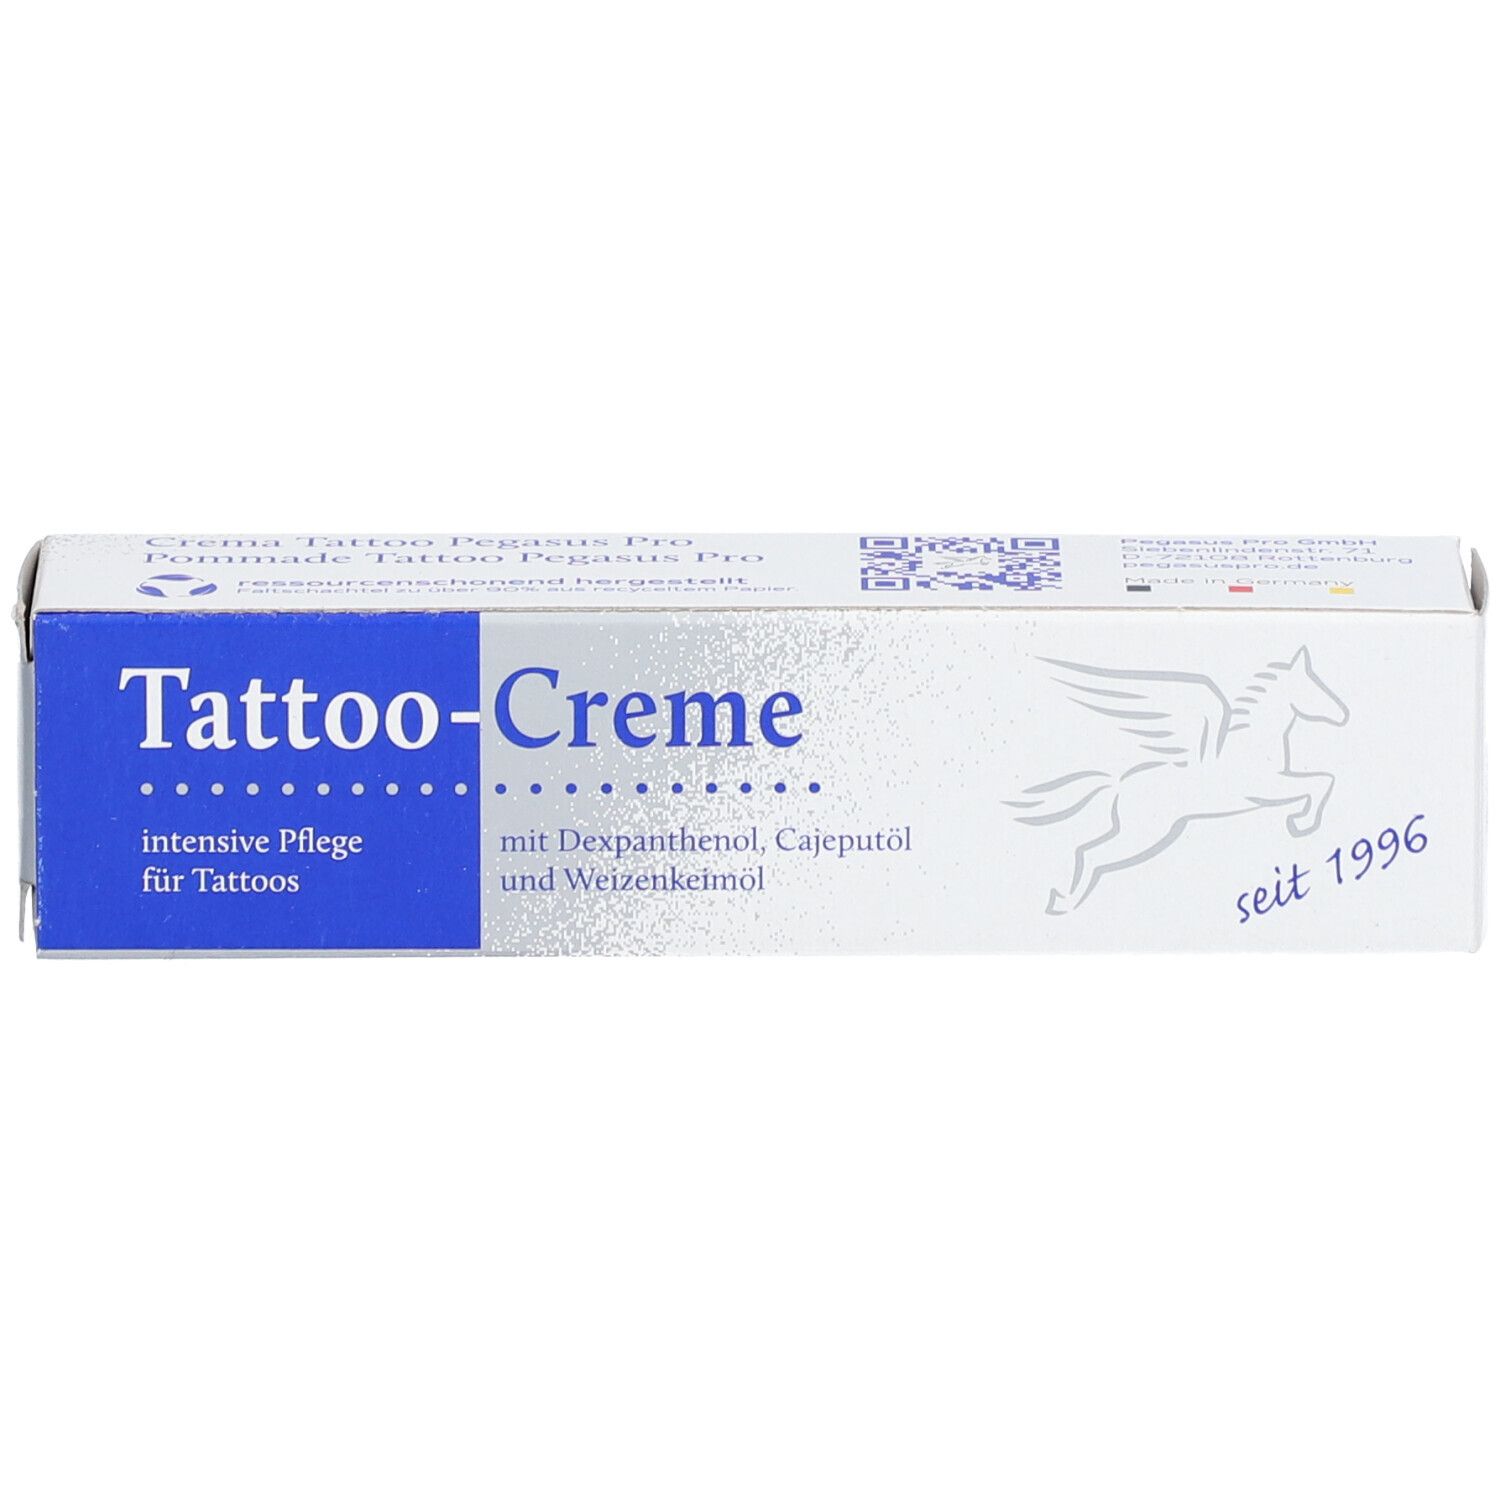 Tattoo-Creme